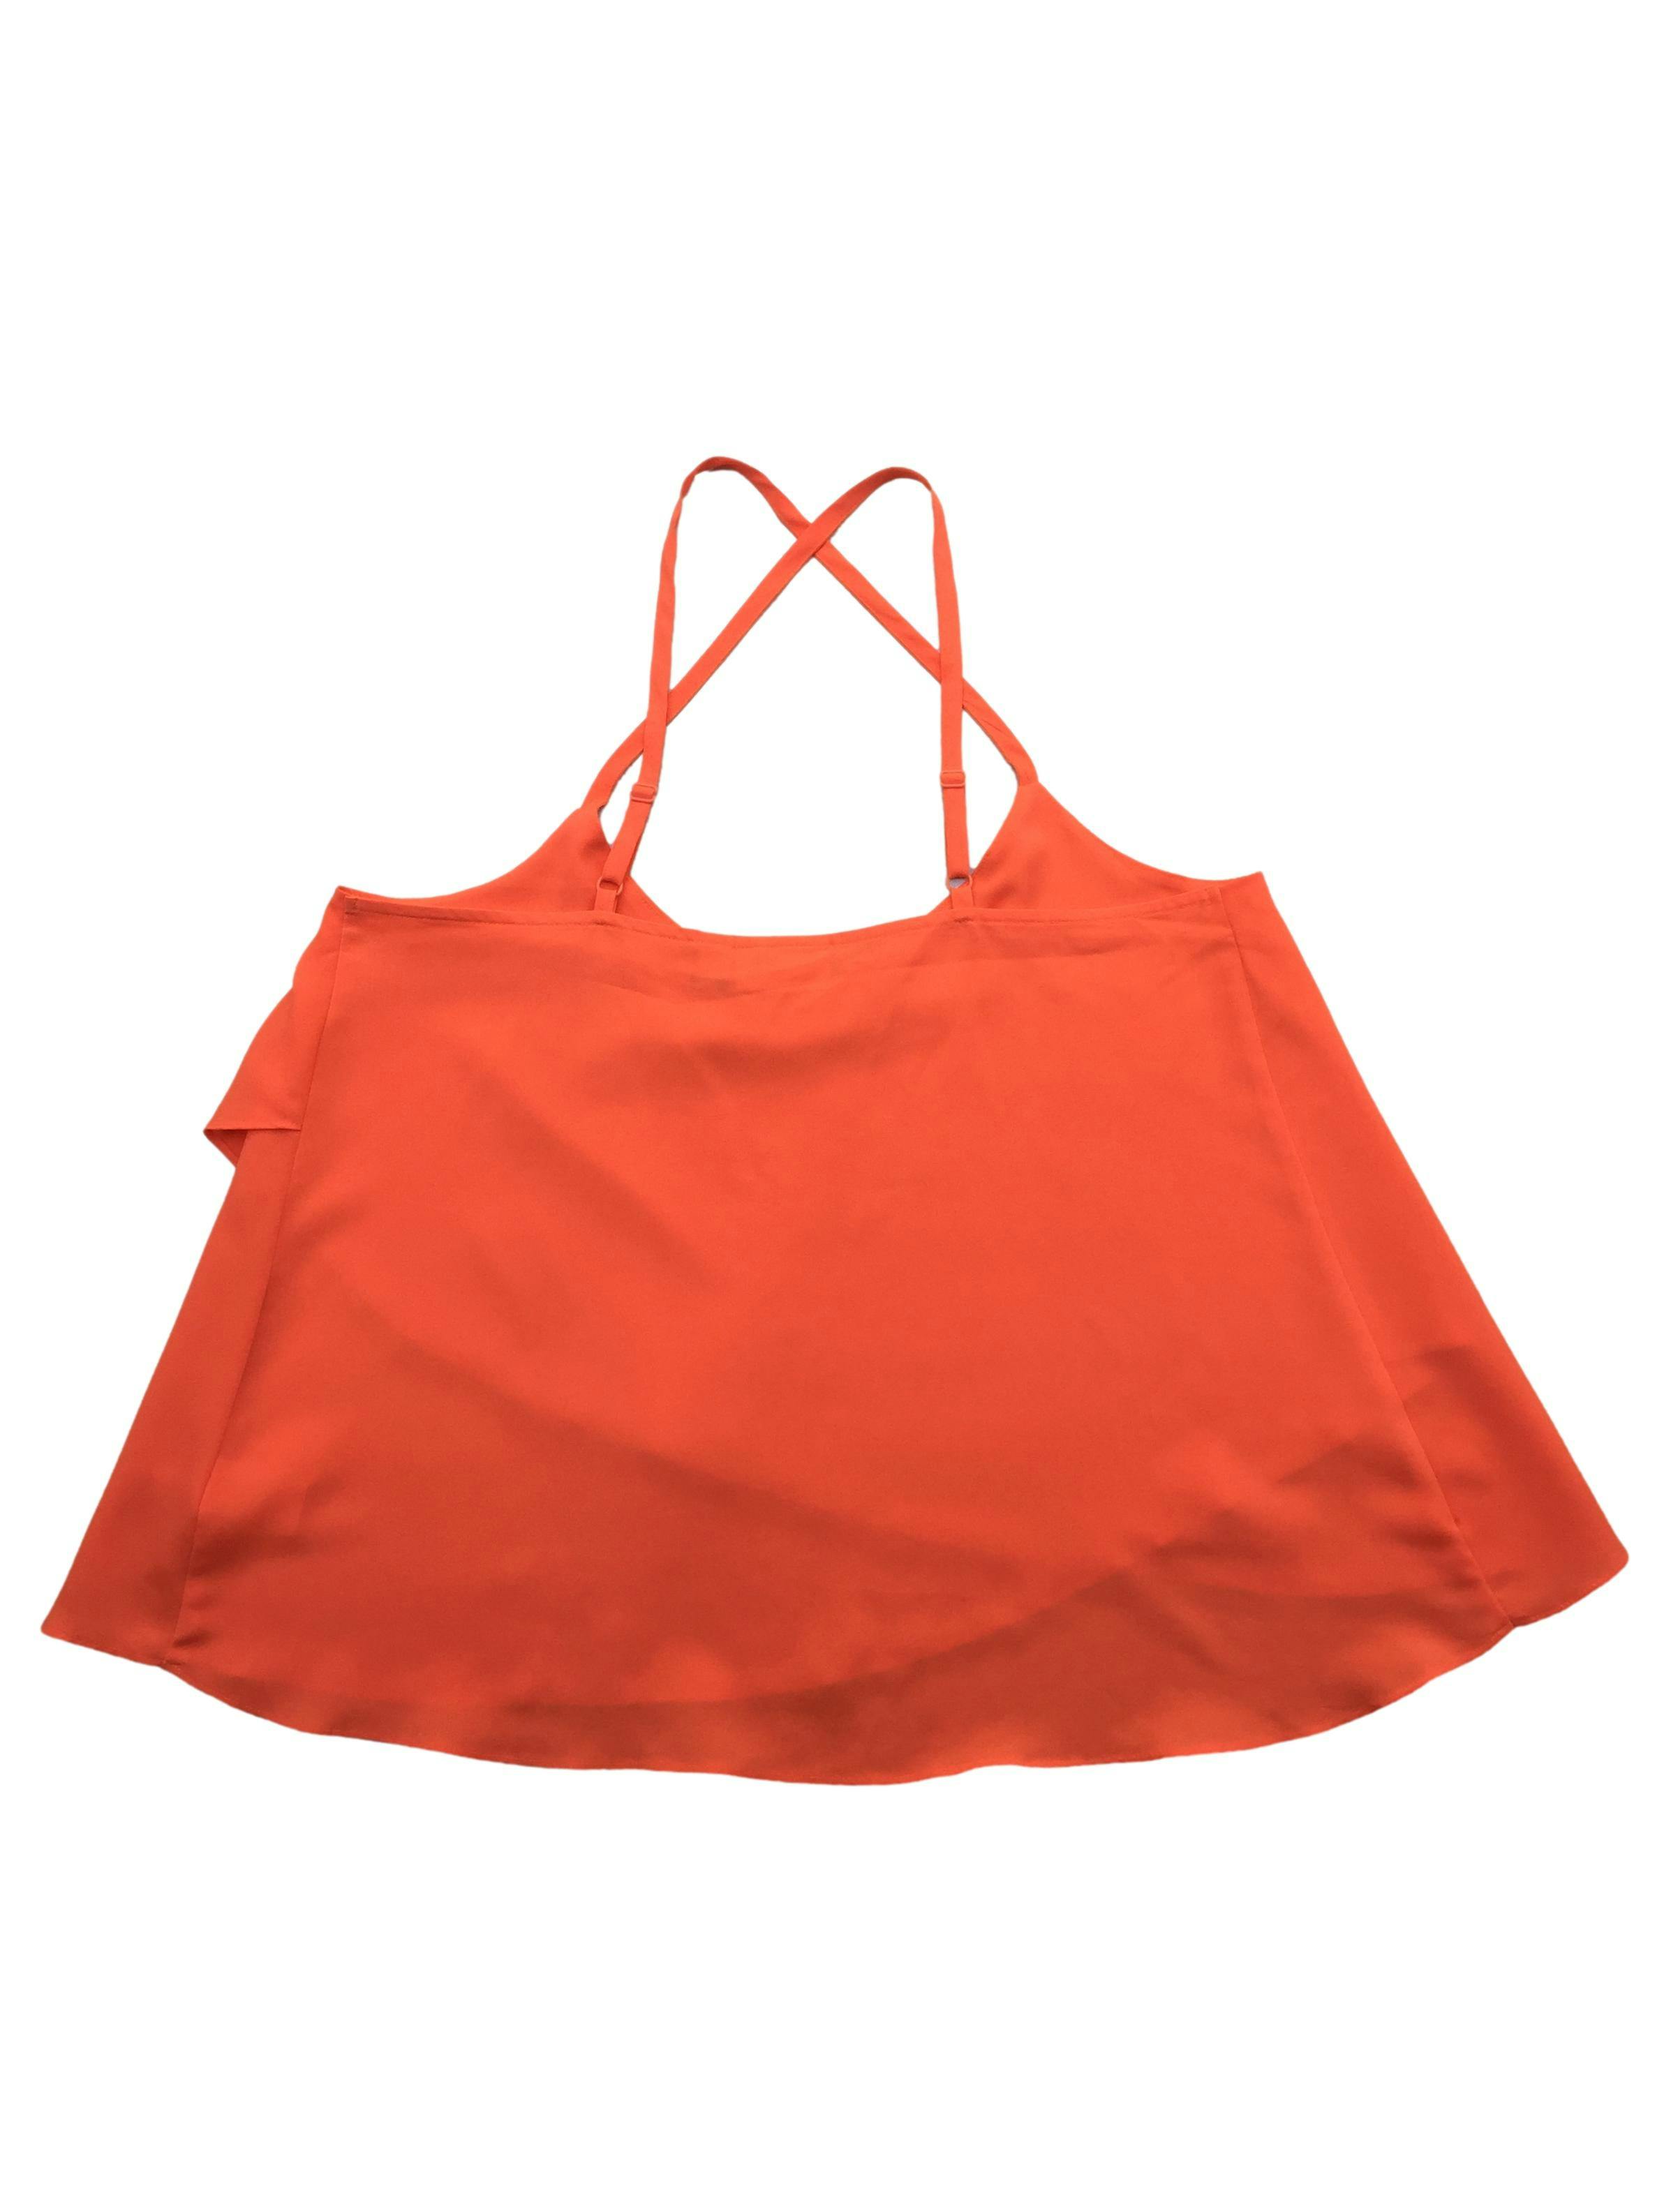 Blusa de tiritas Bisou Bisou dos capas de tela plana anaranjada. Busto 95cm Largo 65cm